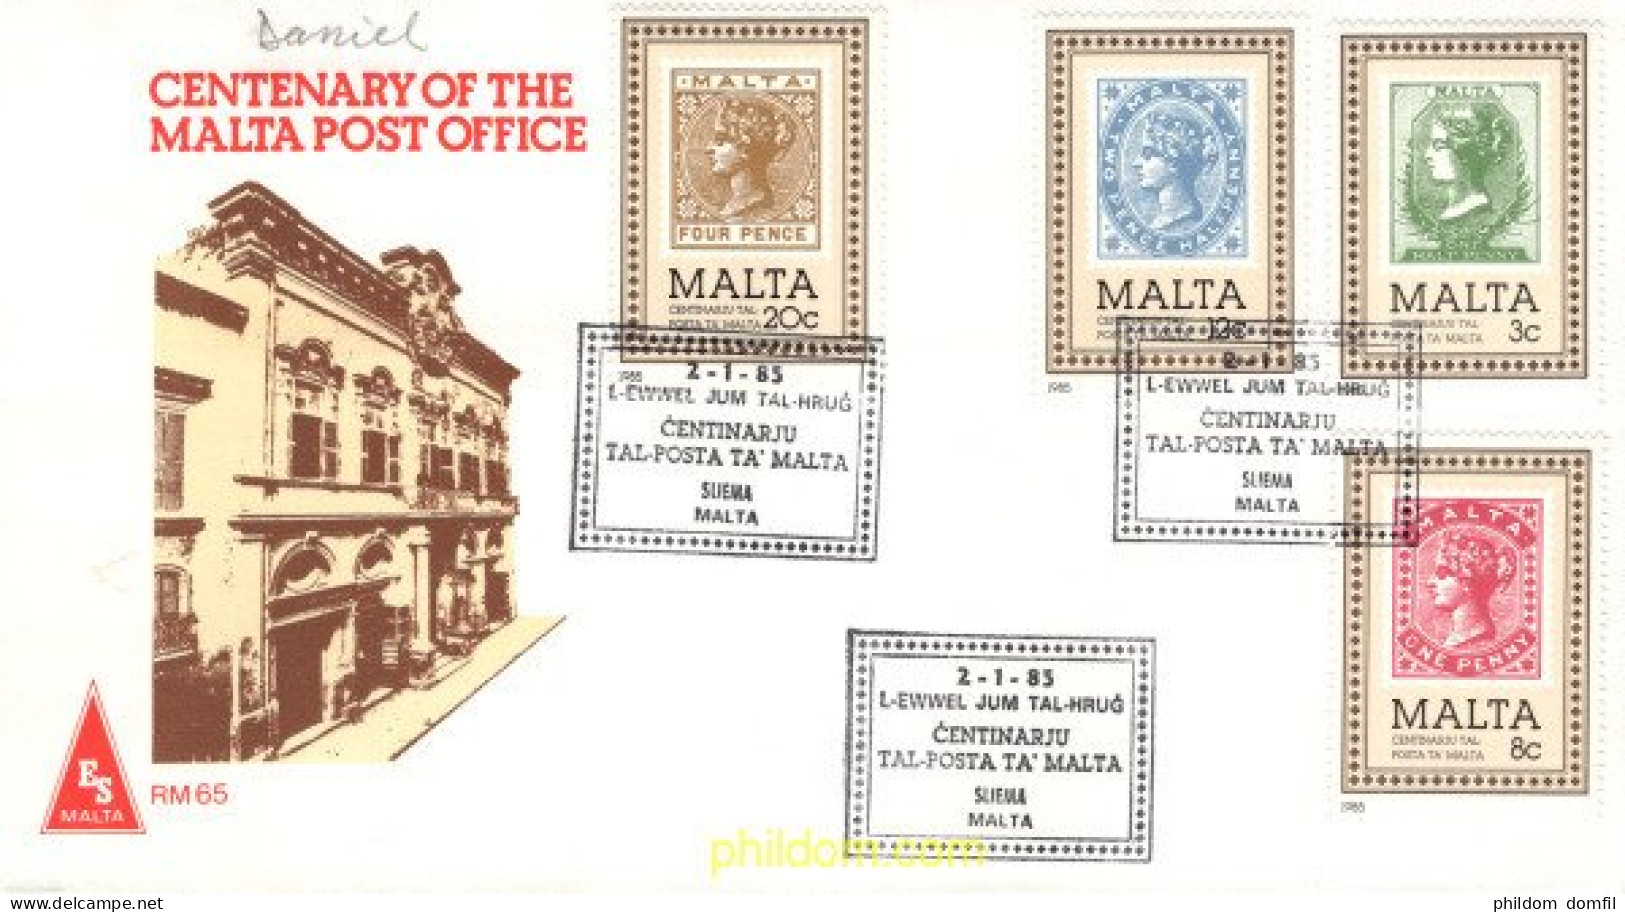 712616 MNH MALTA 1985 CENTENARIO DEL SELLO DE MALTA - Malte